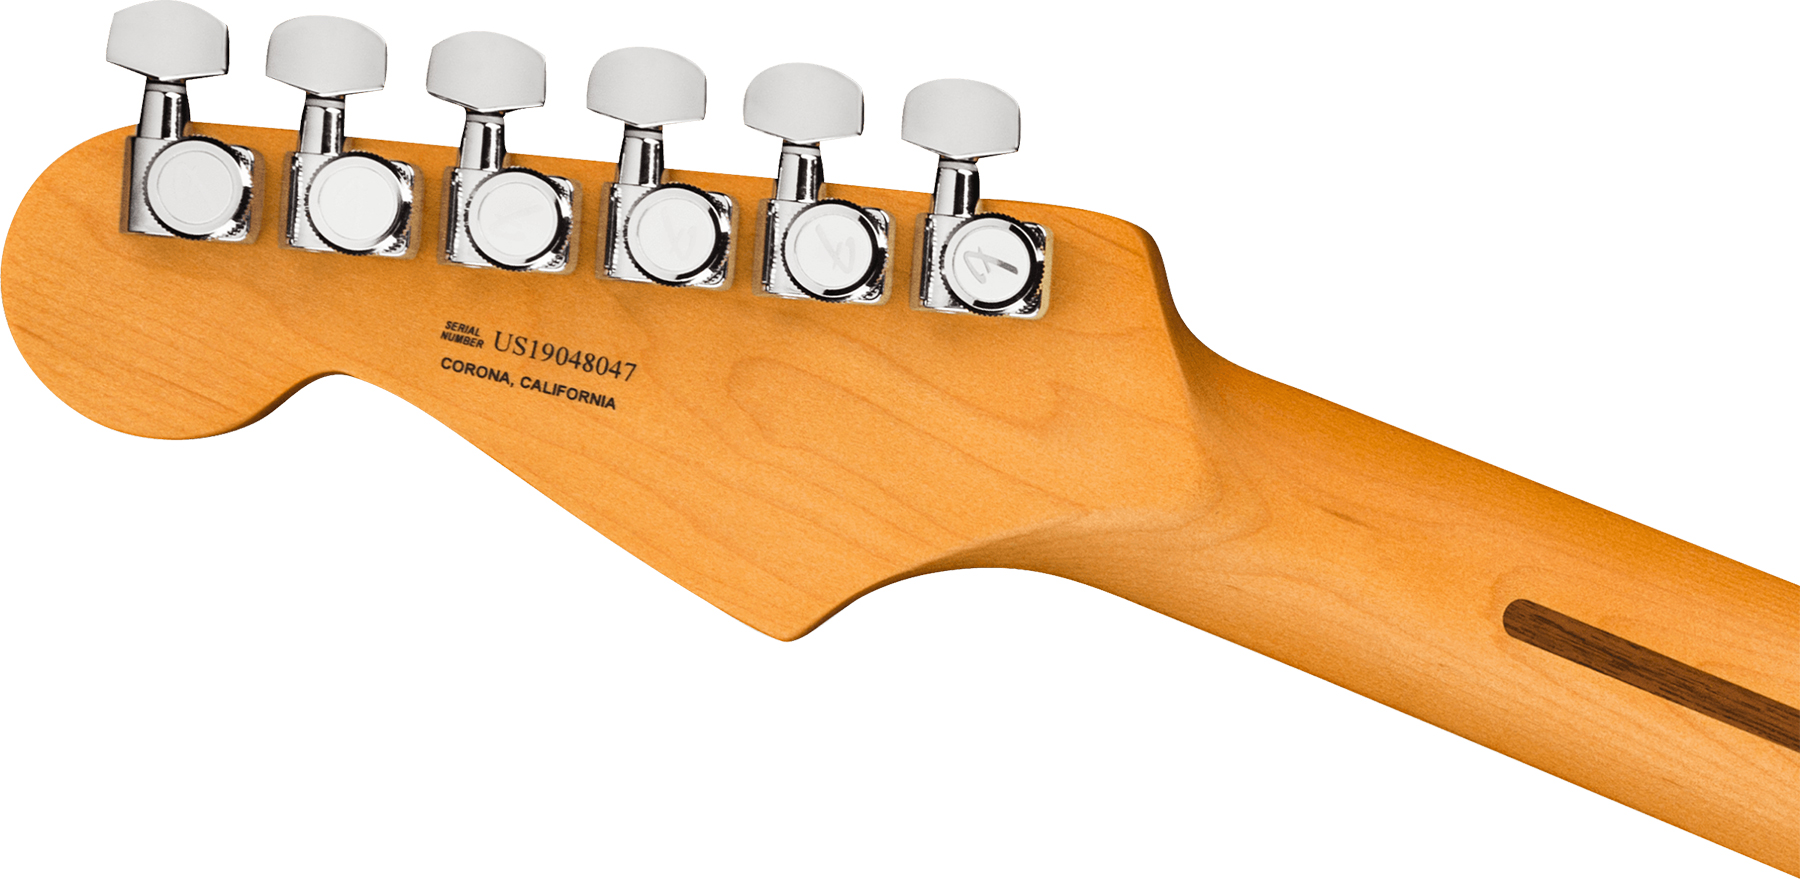 Fender Strat American Ultra 2019 Usa Rw - Ultraburst - Elektrische gitaar in Str-vorm - Variation 3